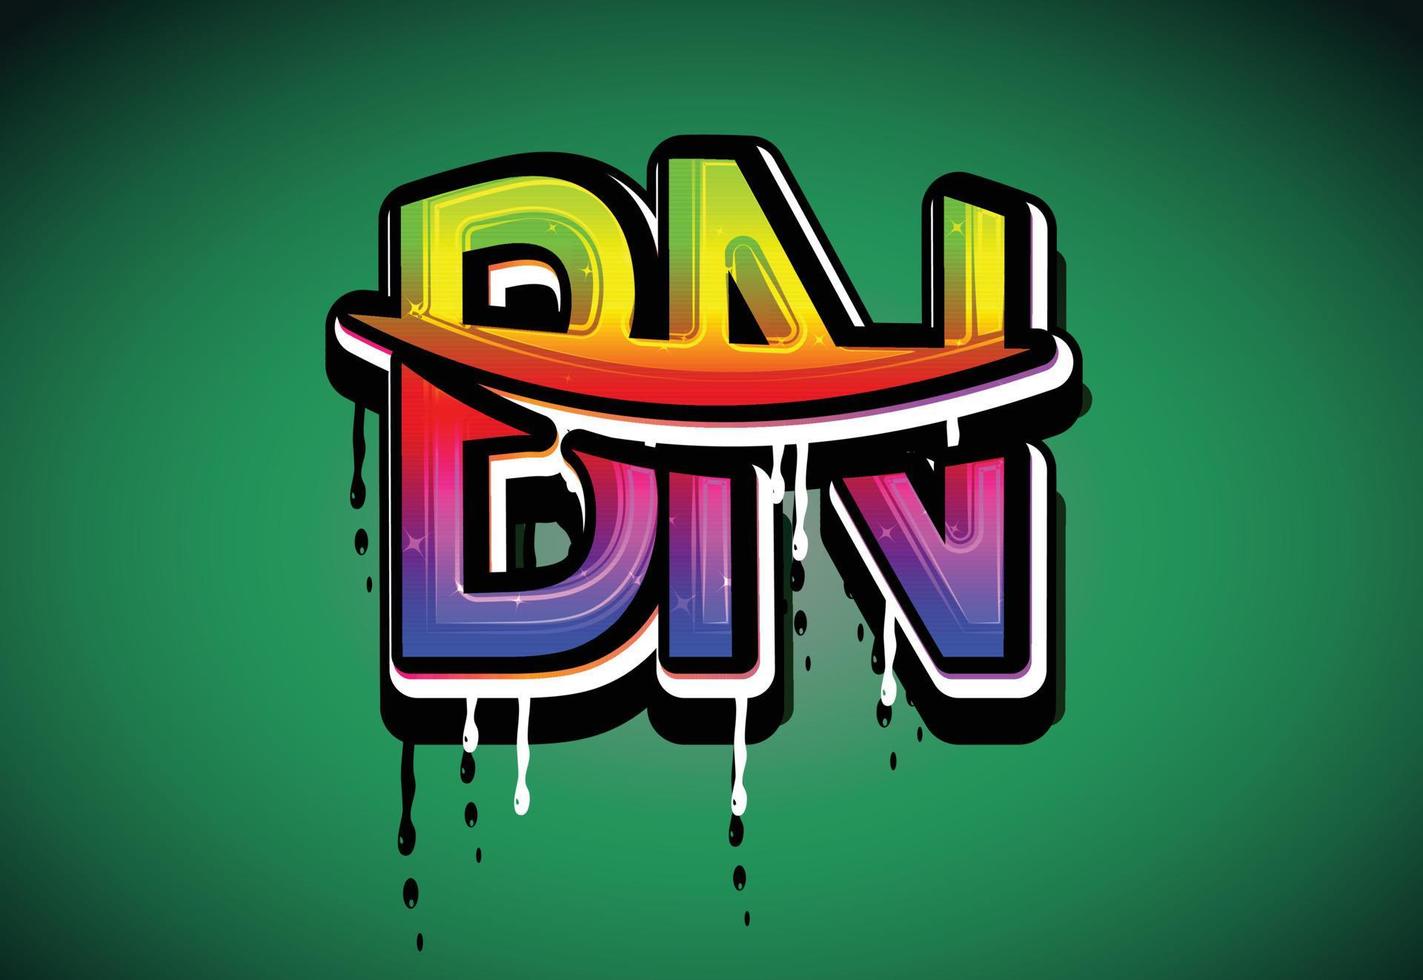 bn brief swoosh logo vector